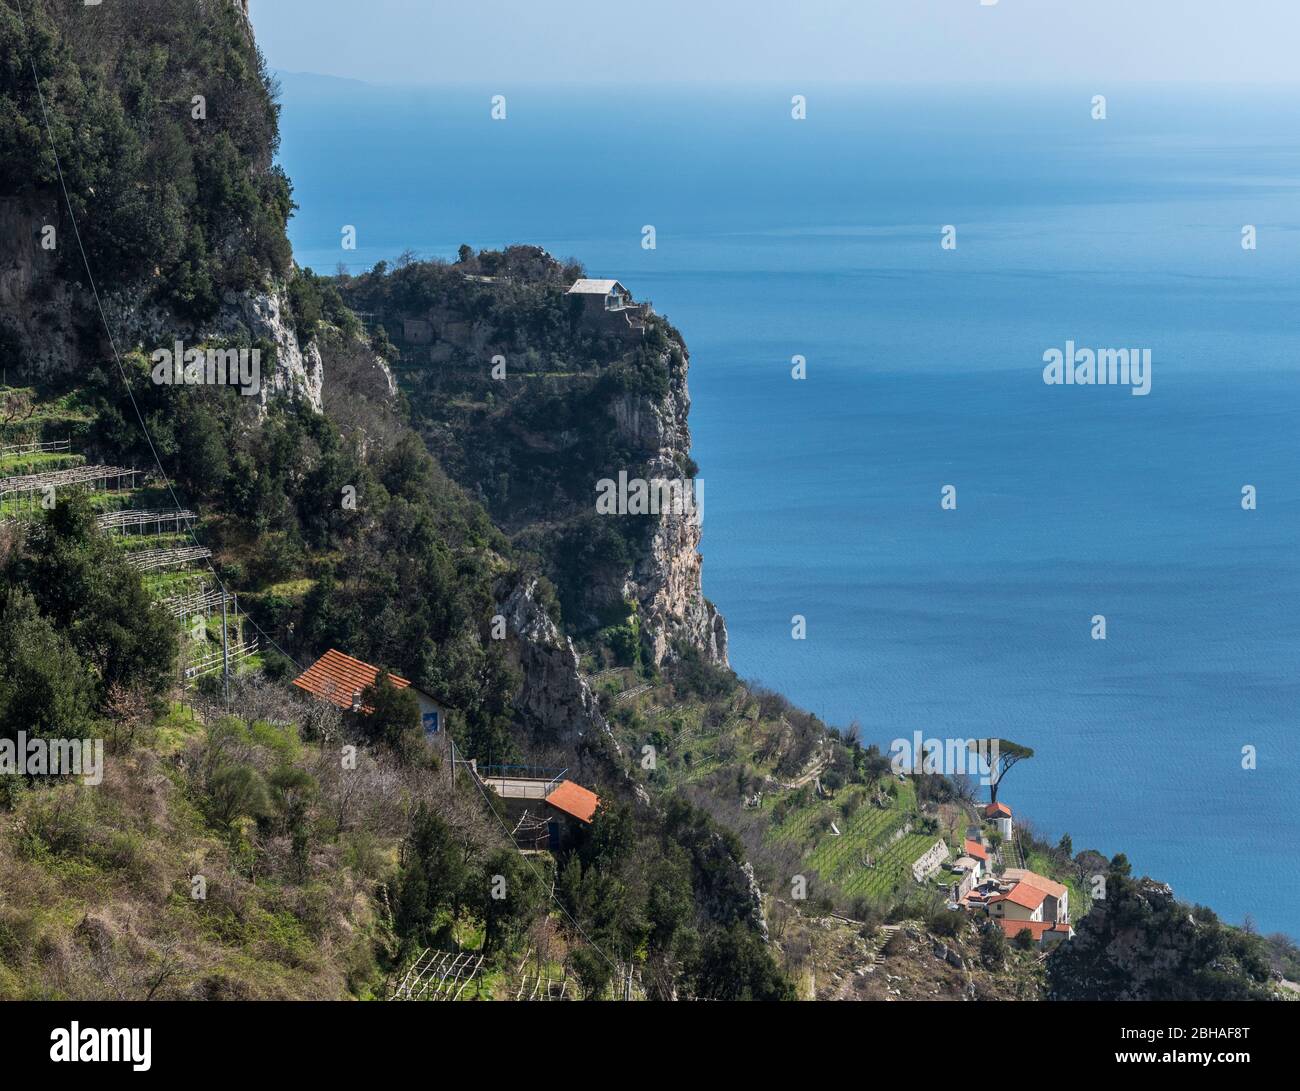 Der Weg der Götter: Sentiero degli Dei. Unglaublich schöner Wanderweg hoch über der Amalfitana oder Amalfi Küste in Italien, von Agerola nach Positano. März 2019. Klippe mit Landwirtschaft Stockfoto